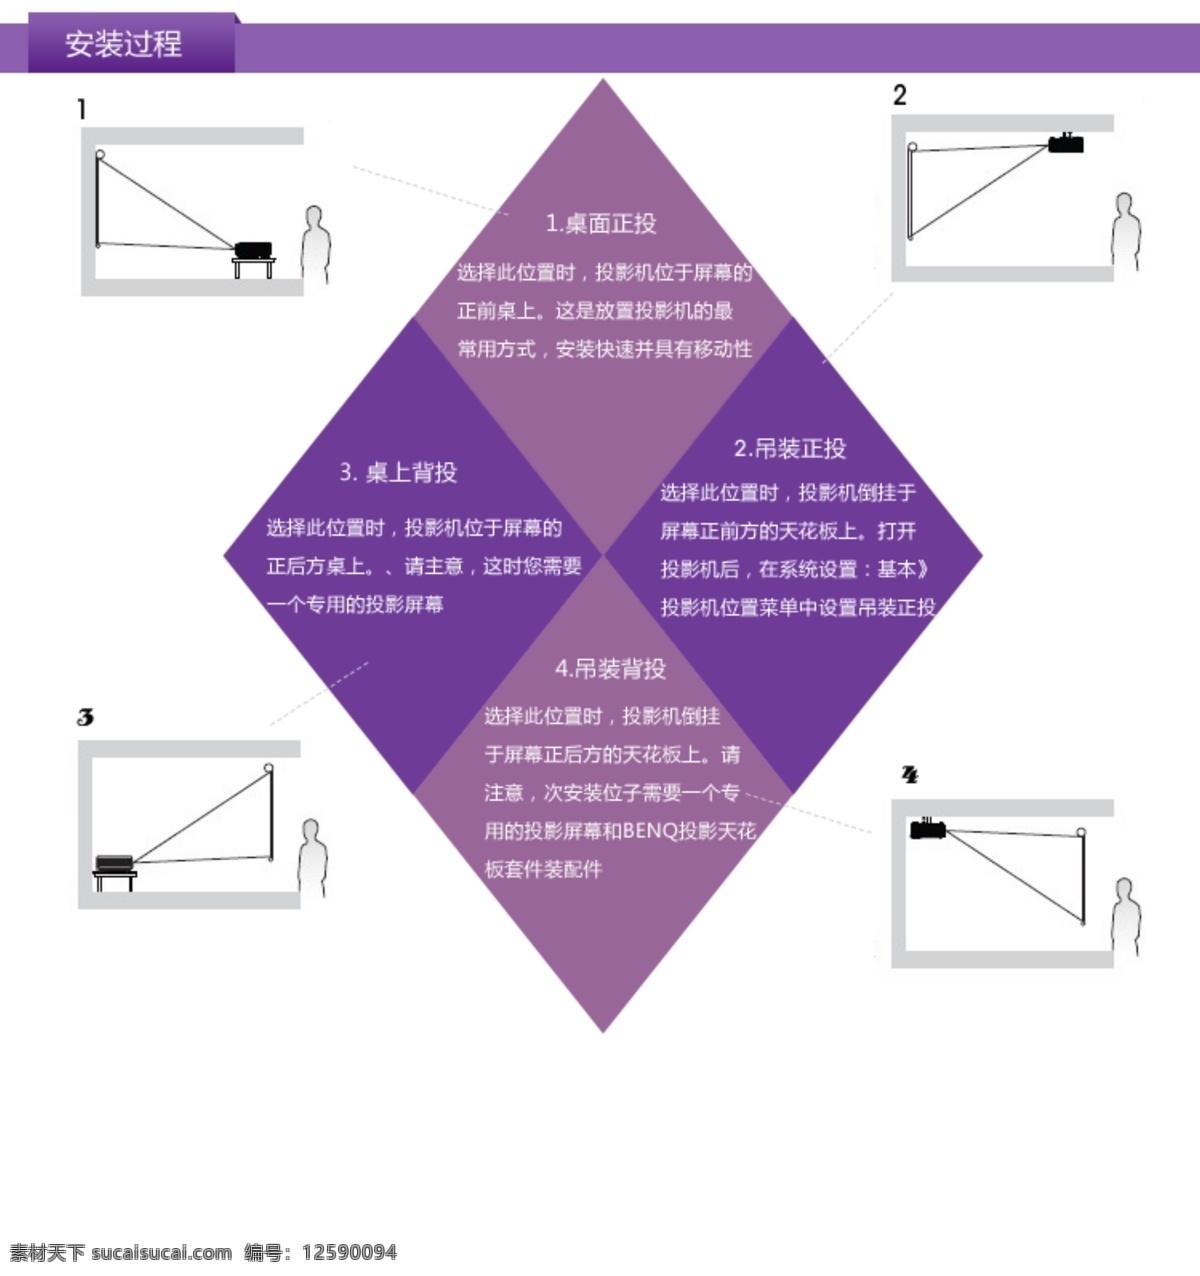 投影机 紫色 安装 过程 详情 页 导航 网页模板 详情页 源文件 中文模版 安装过程 网页素材 导航菜单